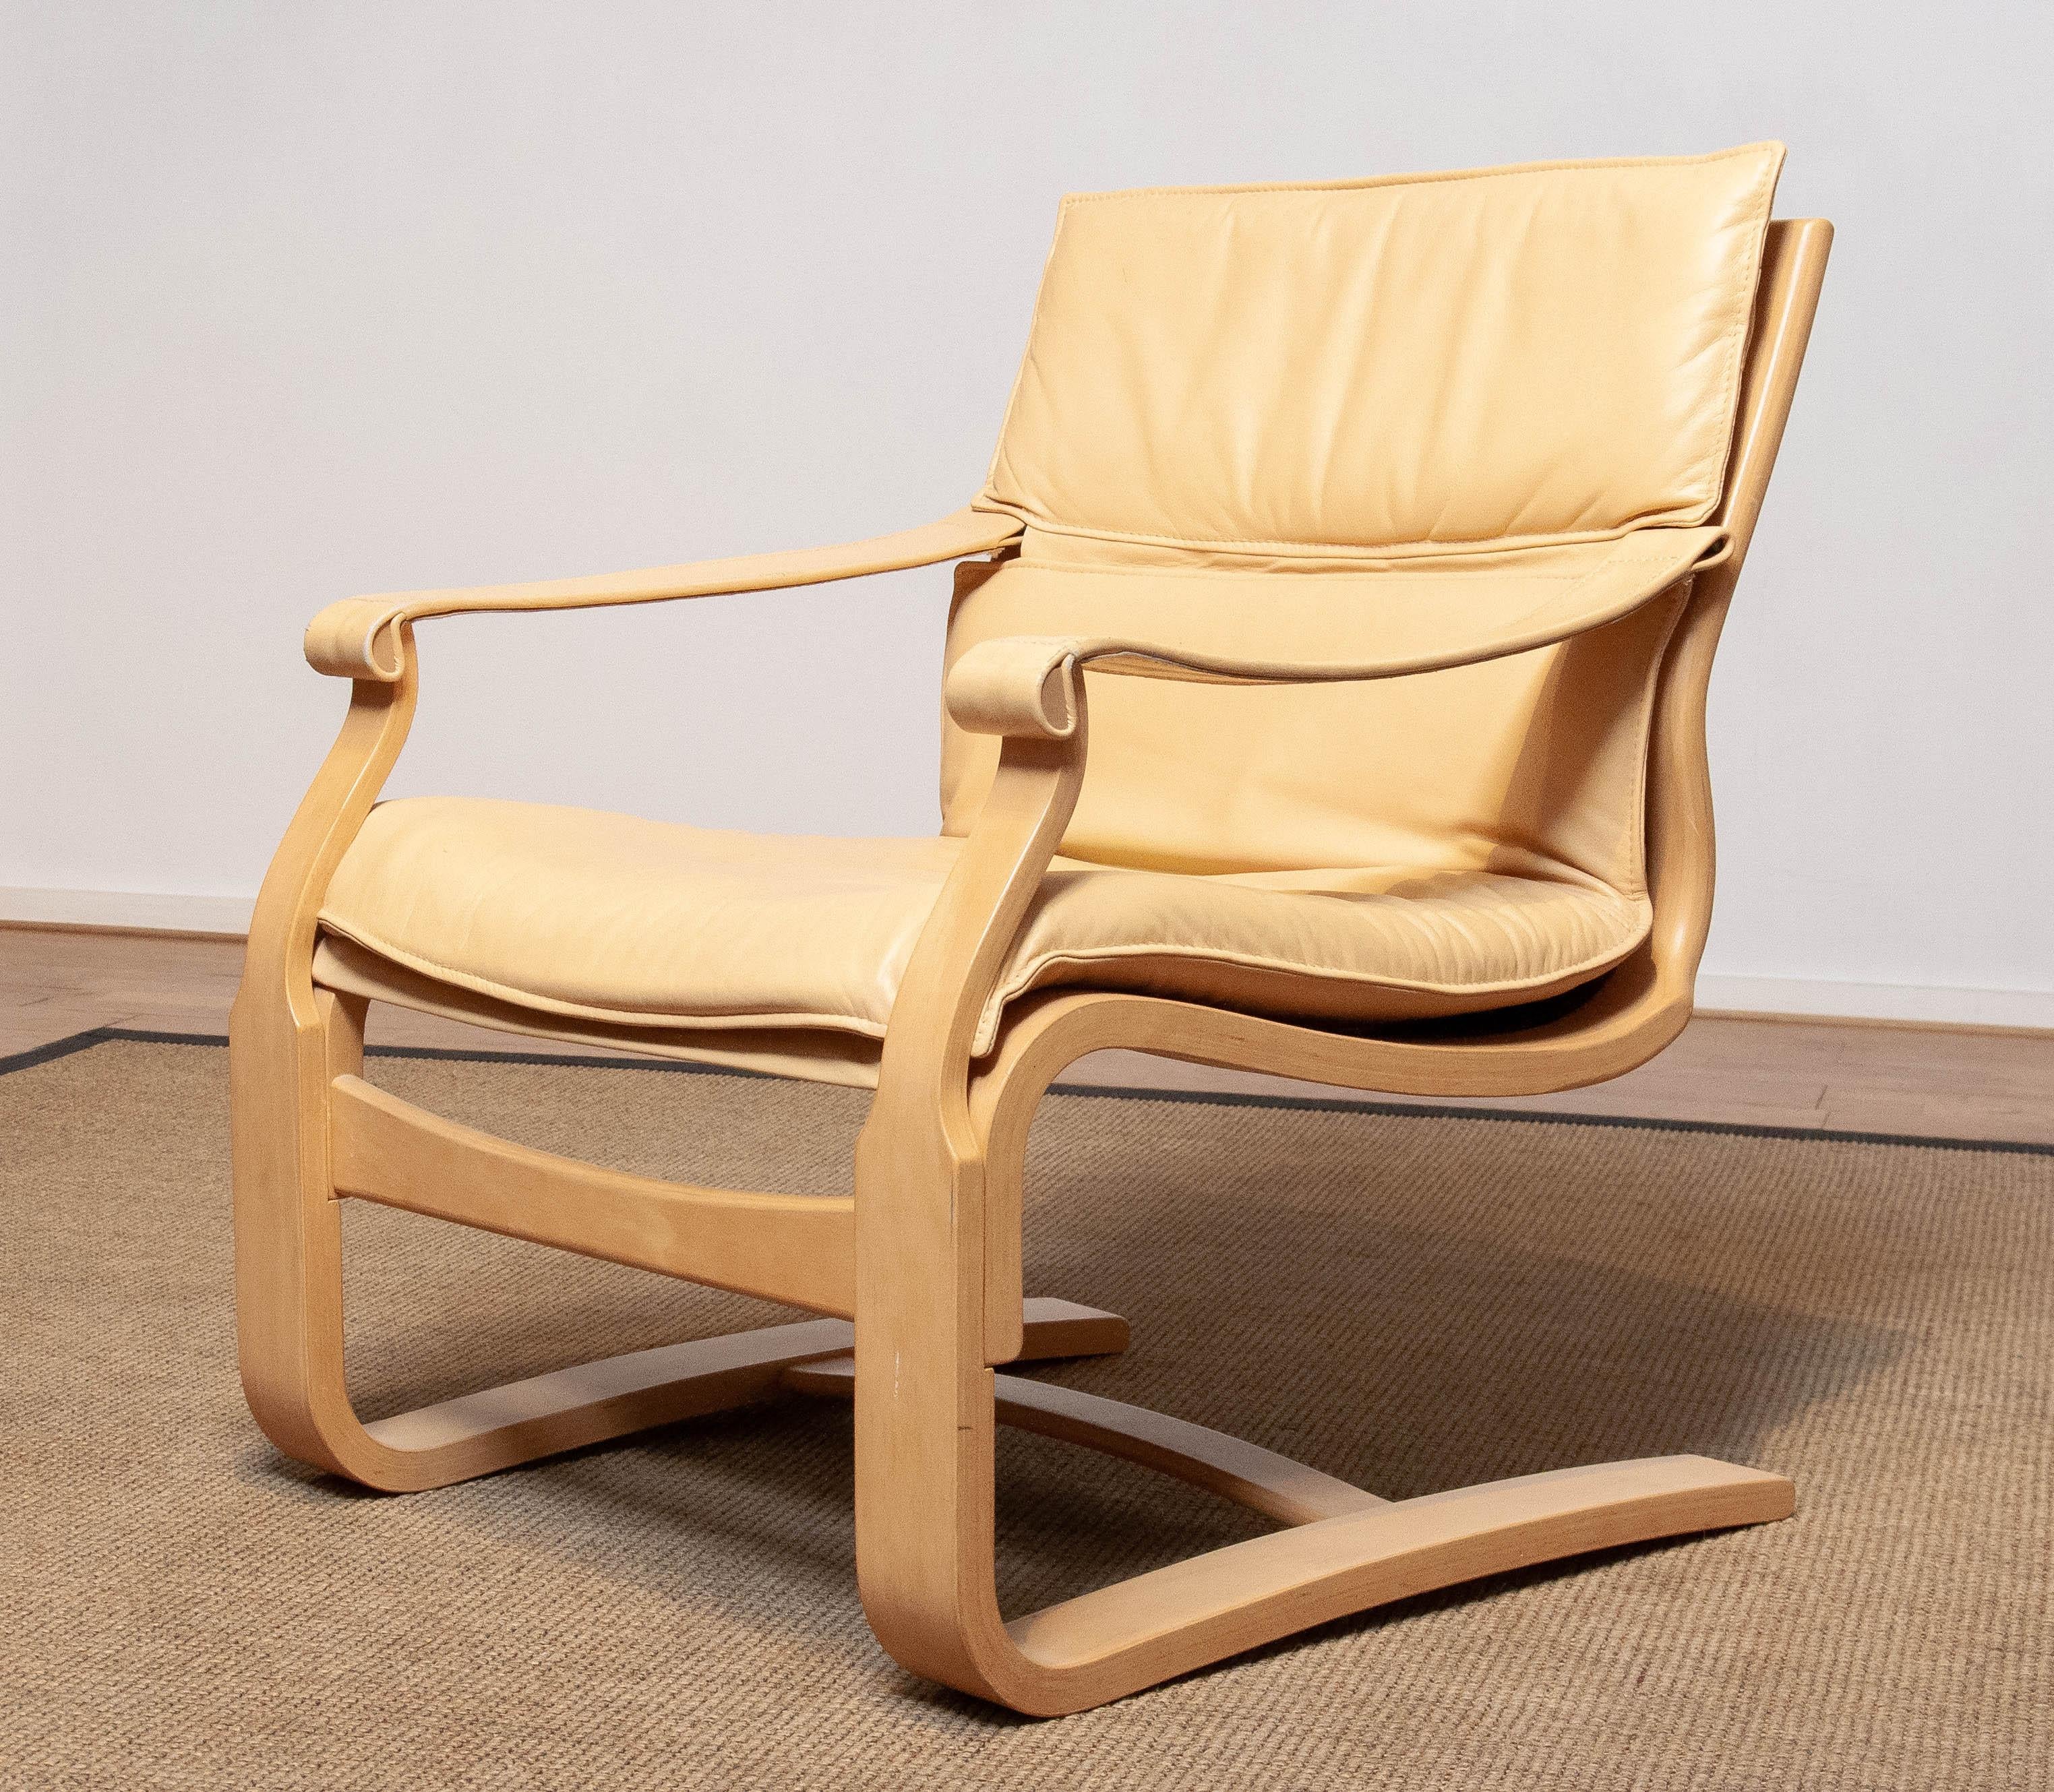 Scandinavian Modern Buche Bugholz Loungesessel entworfen von Ake Fribytter und hergestellt von Nelo in den 1970er Jahren mit beige / creme Leder gepolstert und in insgesamt guten und sehr bequemen Zustand.
Bitte beachten Sie, dass wir zwei Stühle in